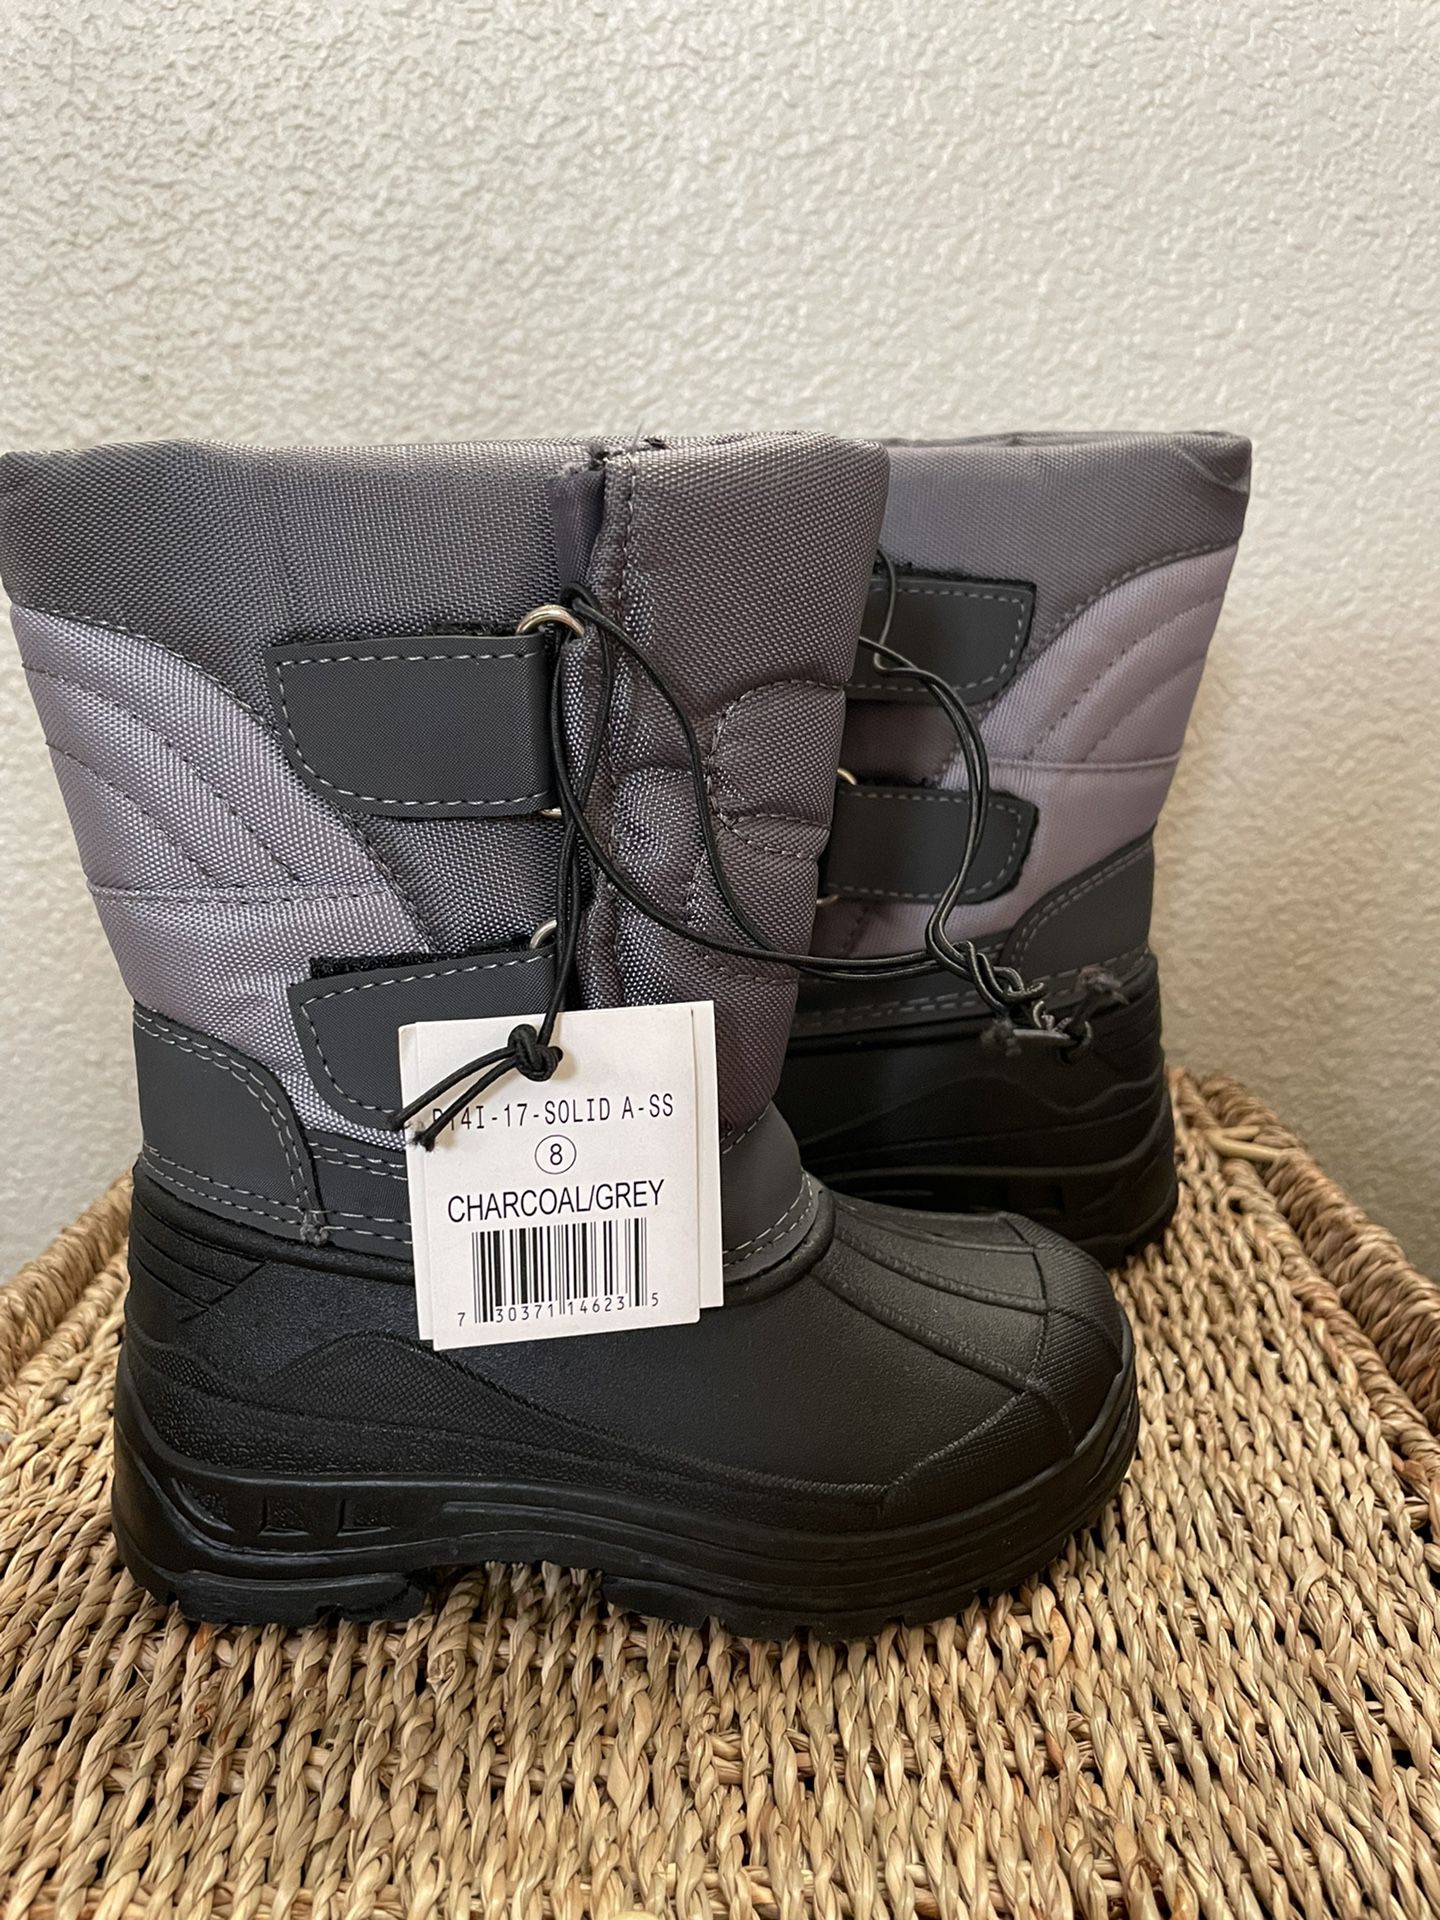 Boy Rain Boots / Size 8